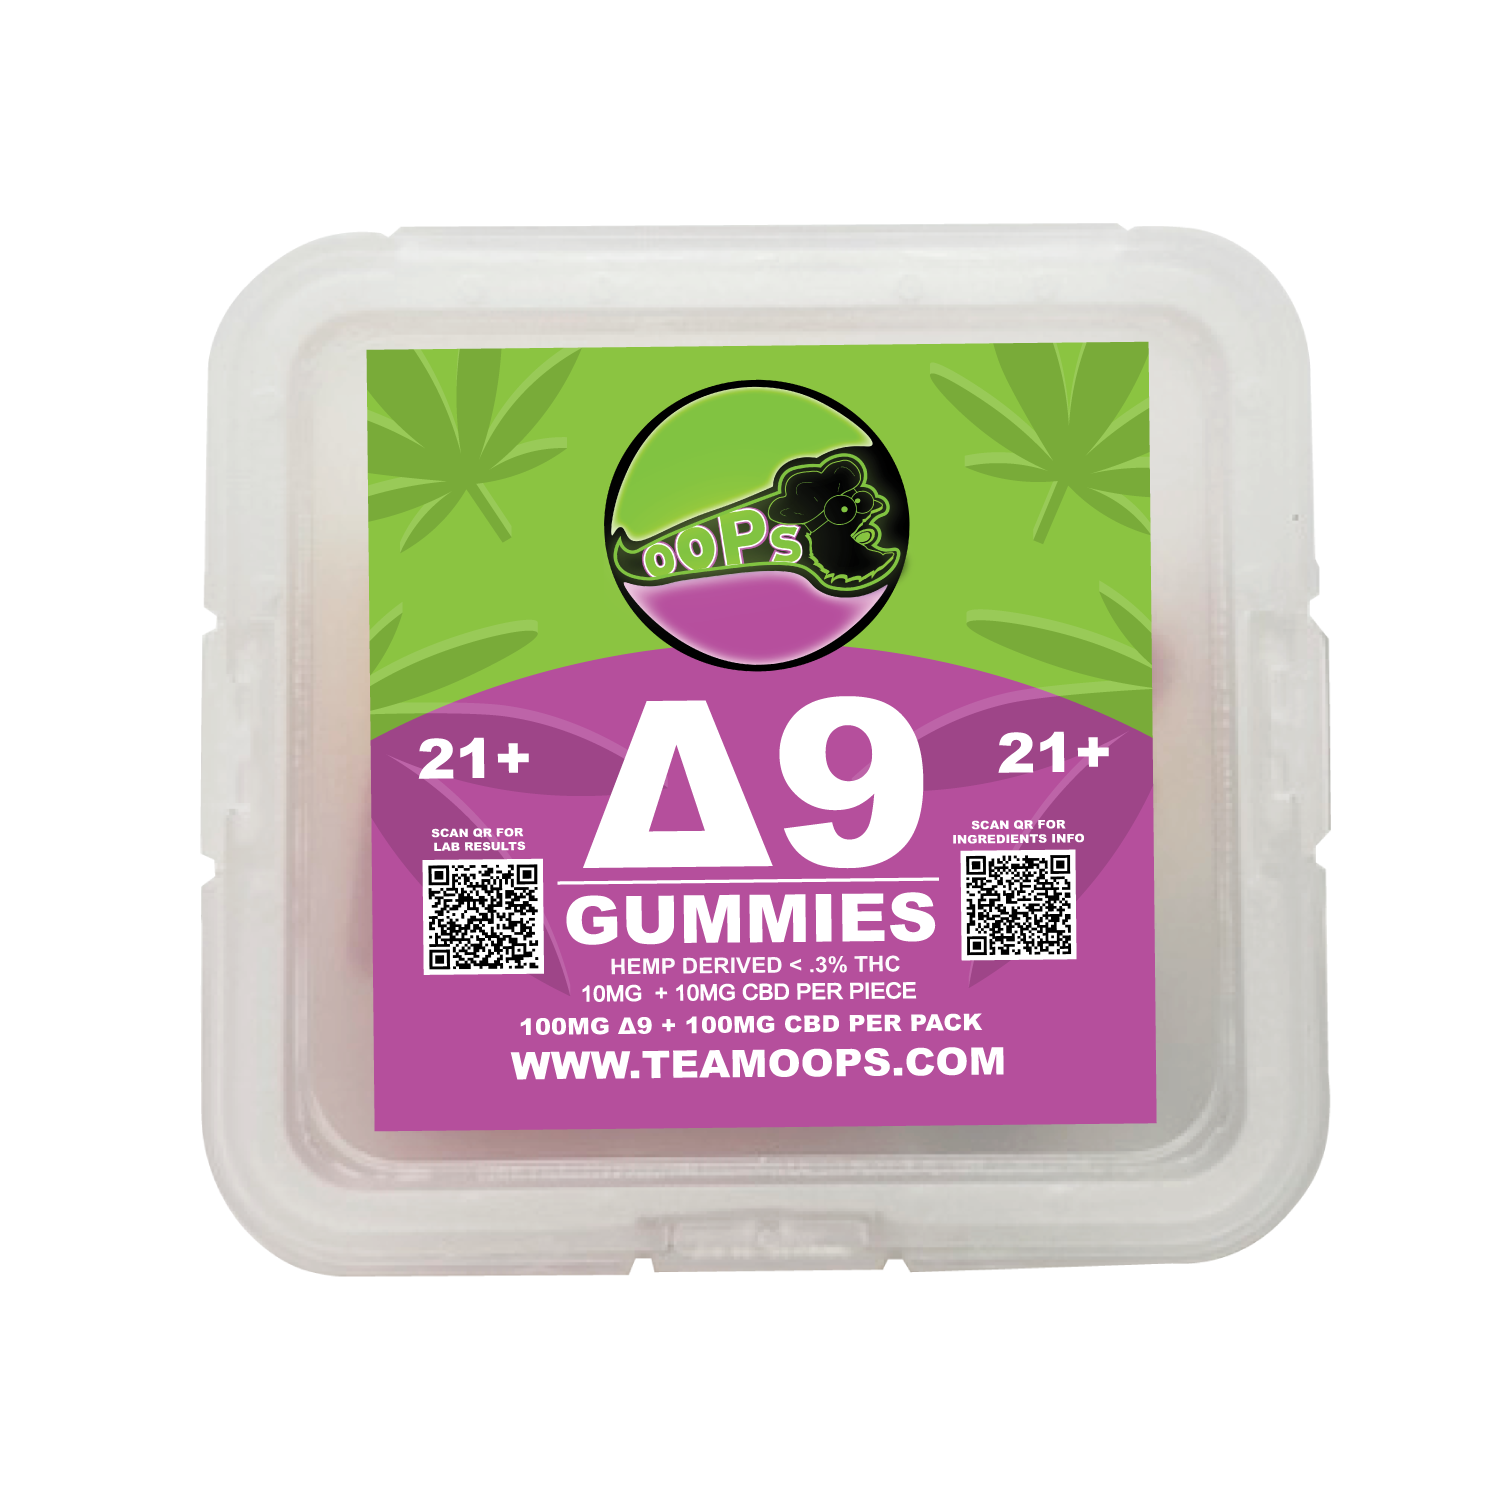 Δ9 Gummies